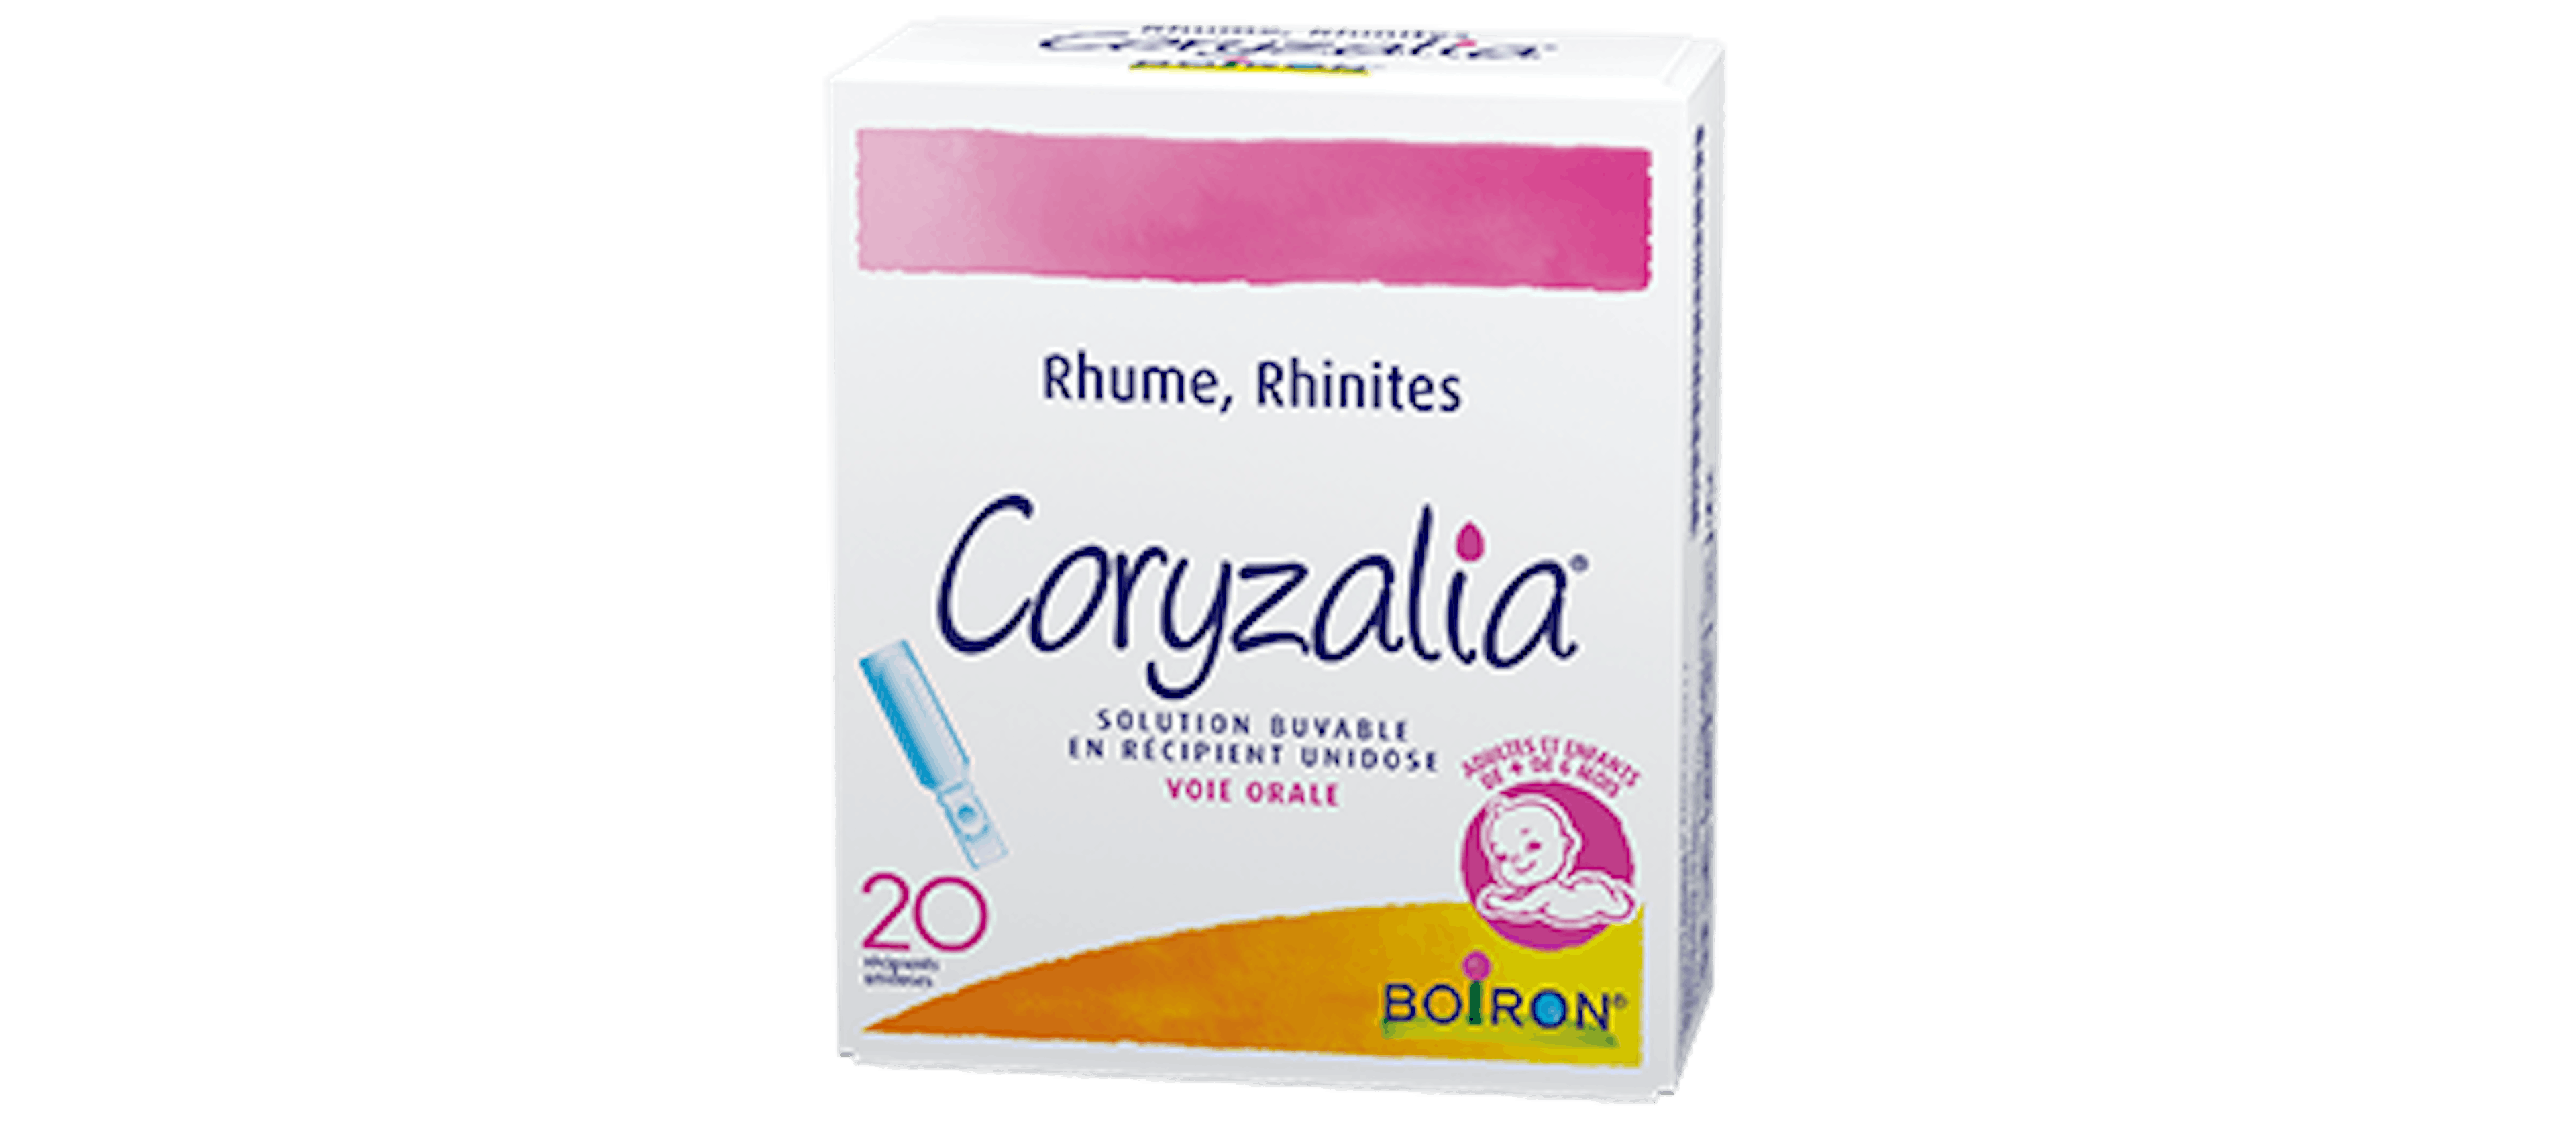 Homéopathie rhume, rhinite - Coryzalia® Solution buvable en récipient unidose Boiron